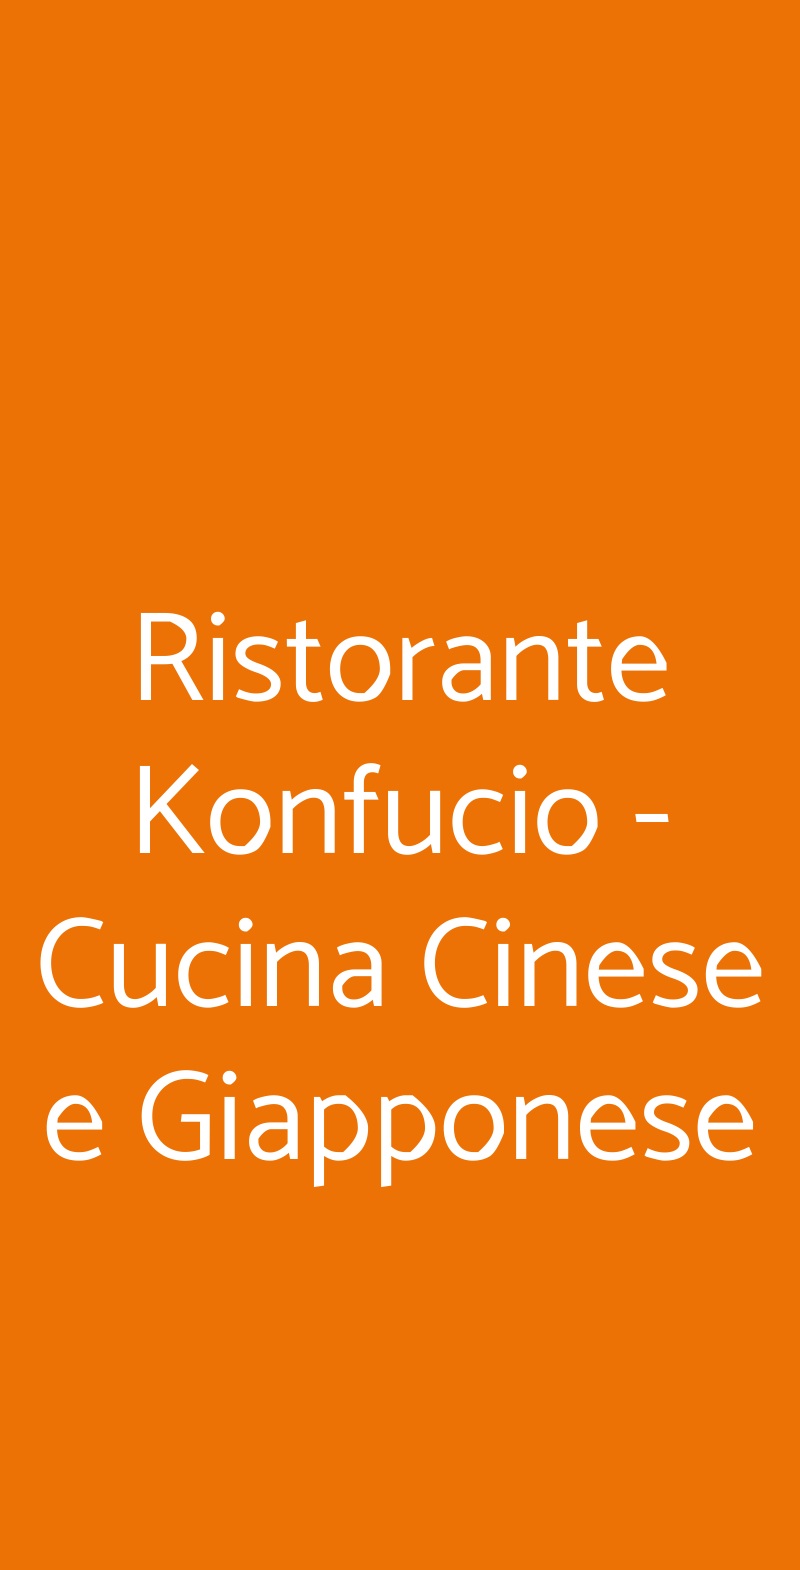 Ristorante Konfucio - Cucina Cinese e Giapponese Montegrotto Terme menù 1 pagina